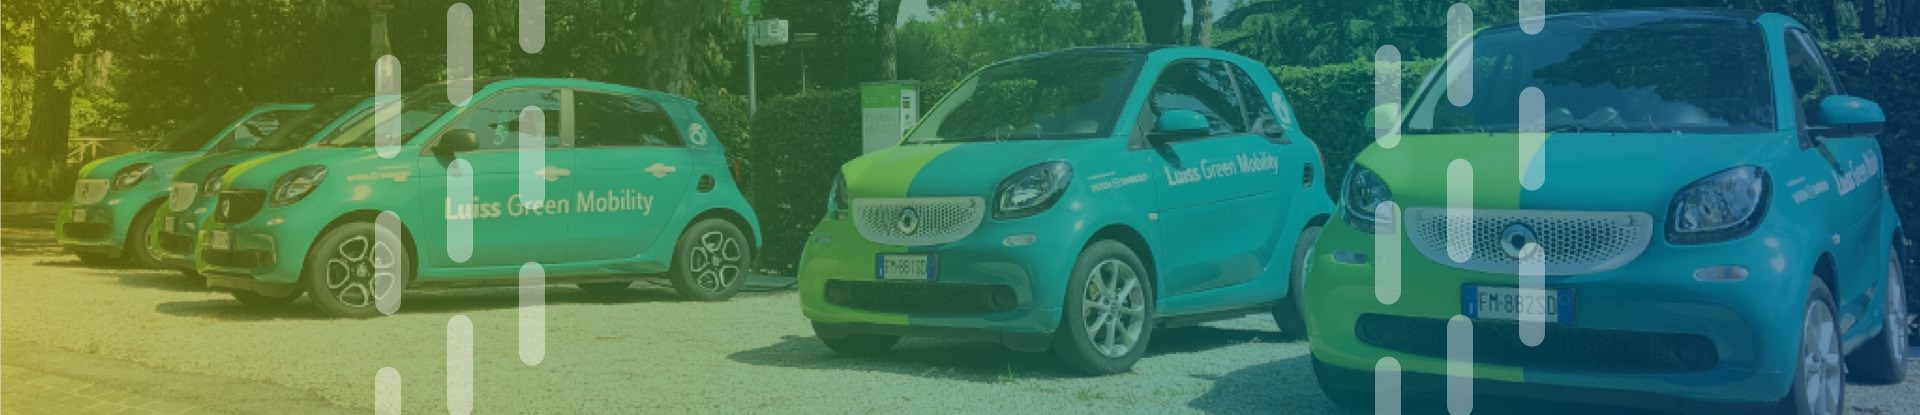  progetto Luiss le auto elettriche per la mobilità sostenibile